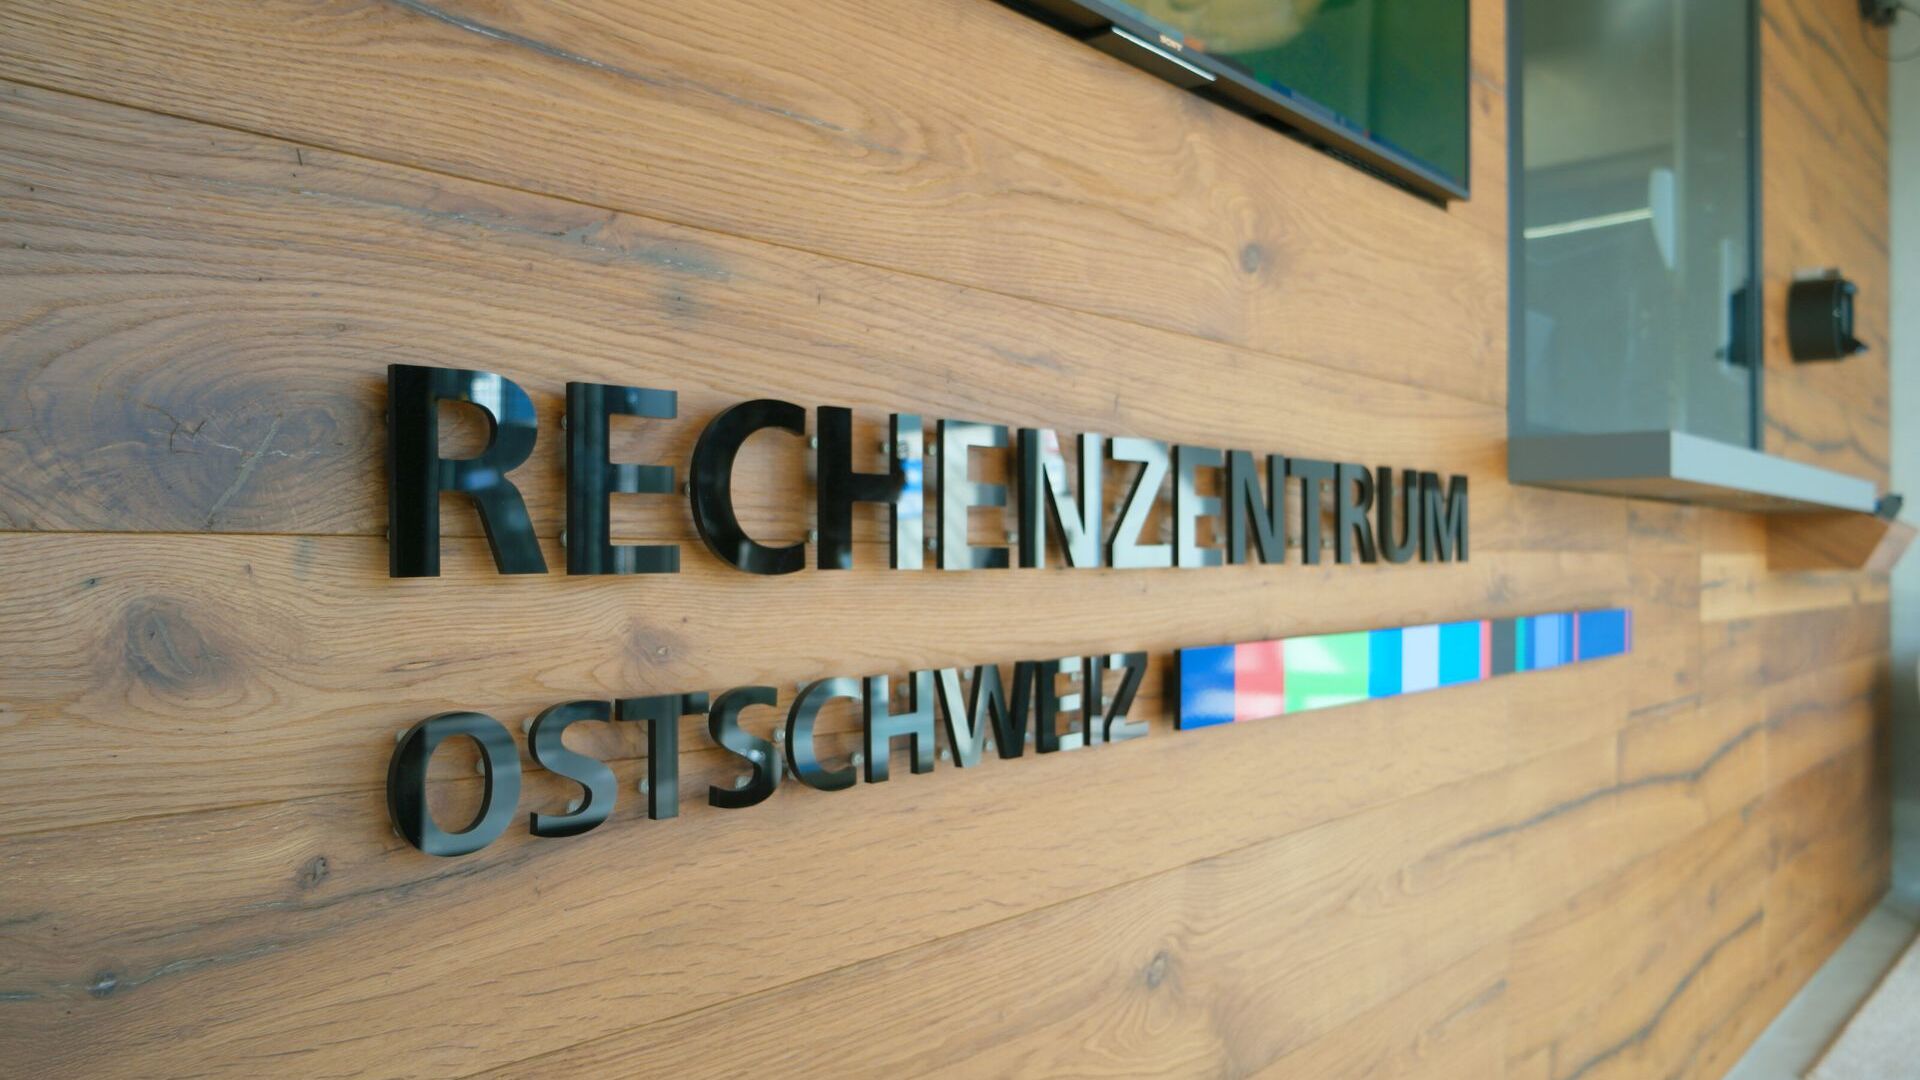 Appenzell Ausserrhoden의 Gais에 있는 Rechenzentrum Ostschweiz의 내부 입구 및 누대